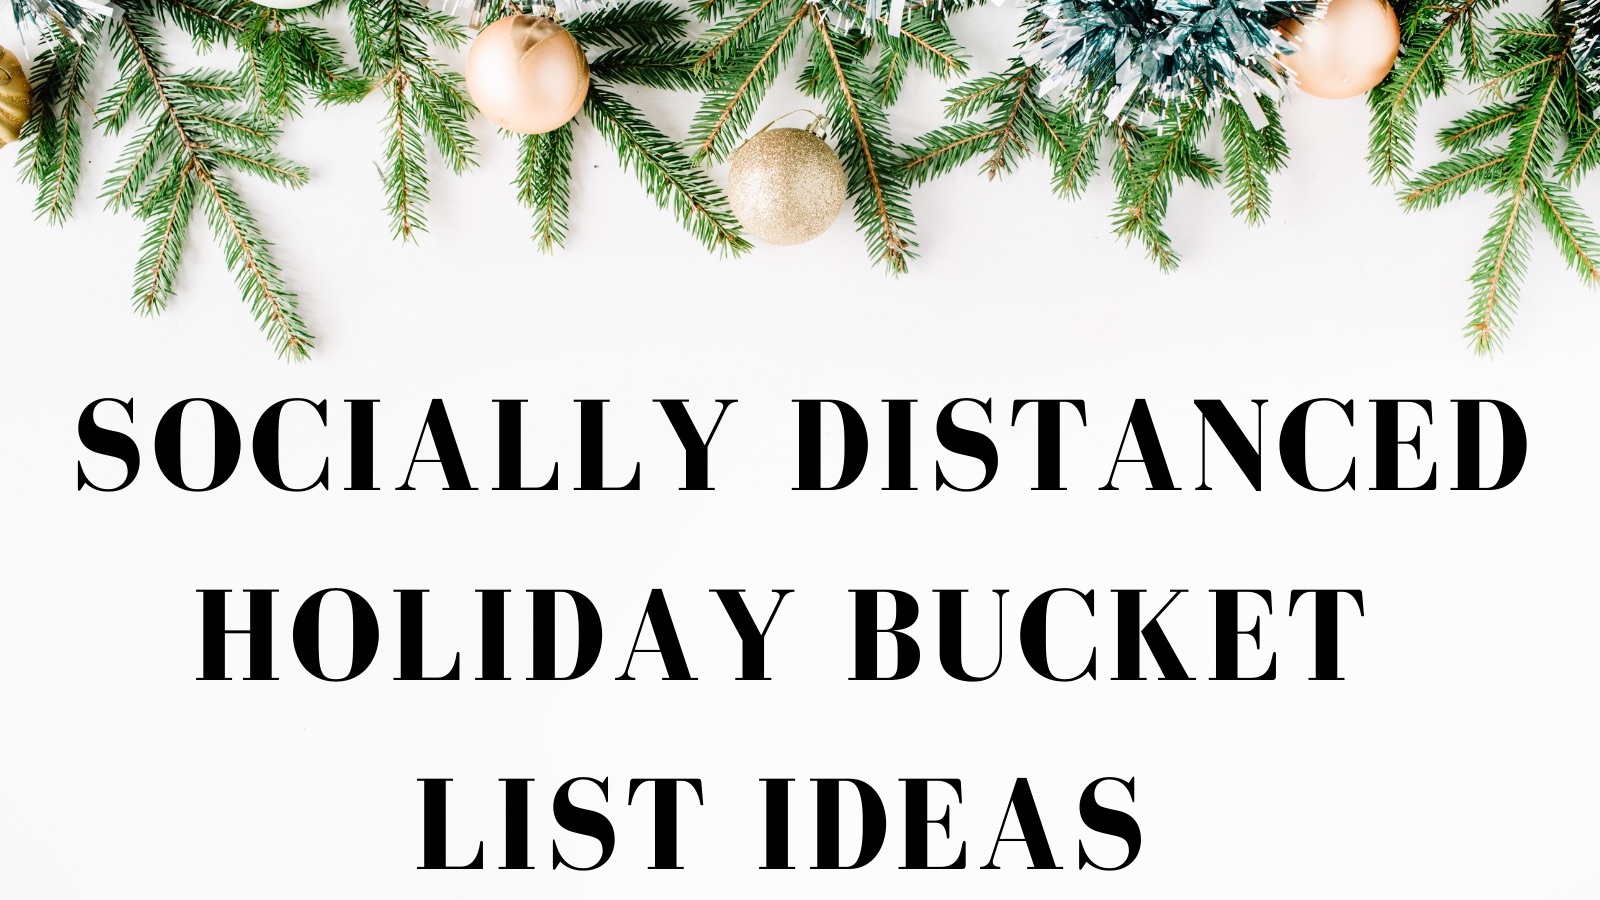 Socially distanced holiday bucket list ideas!